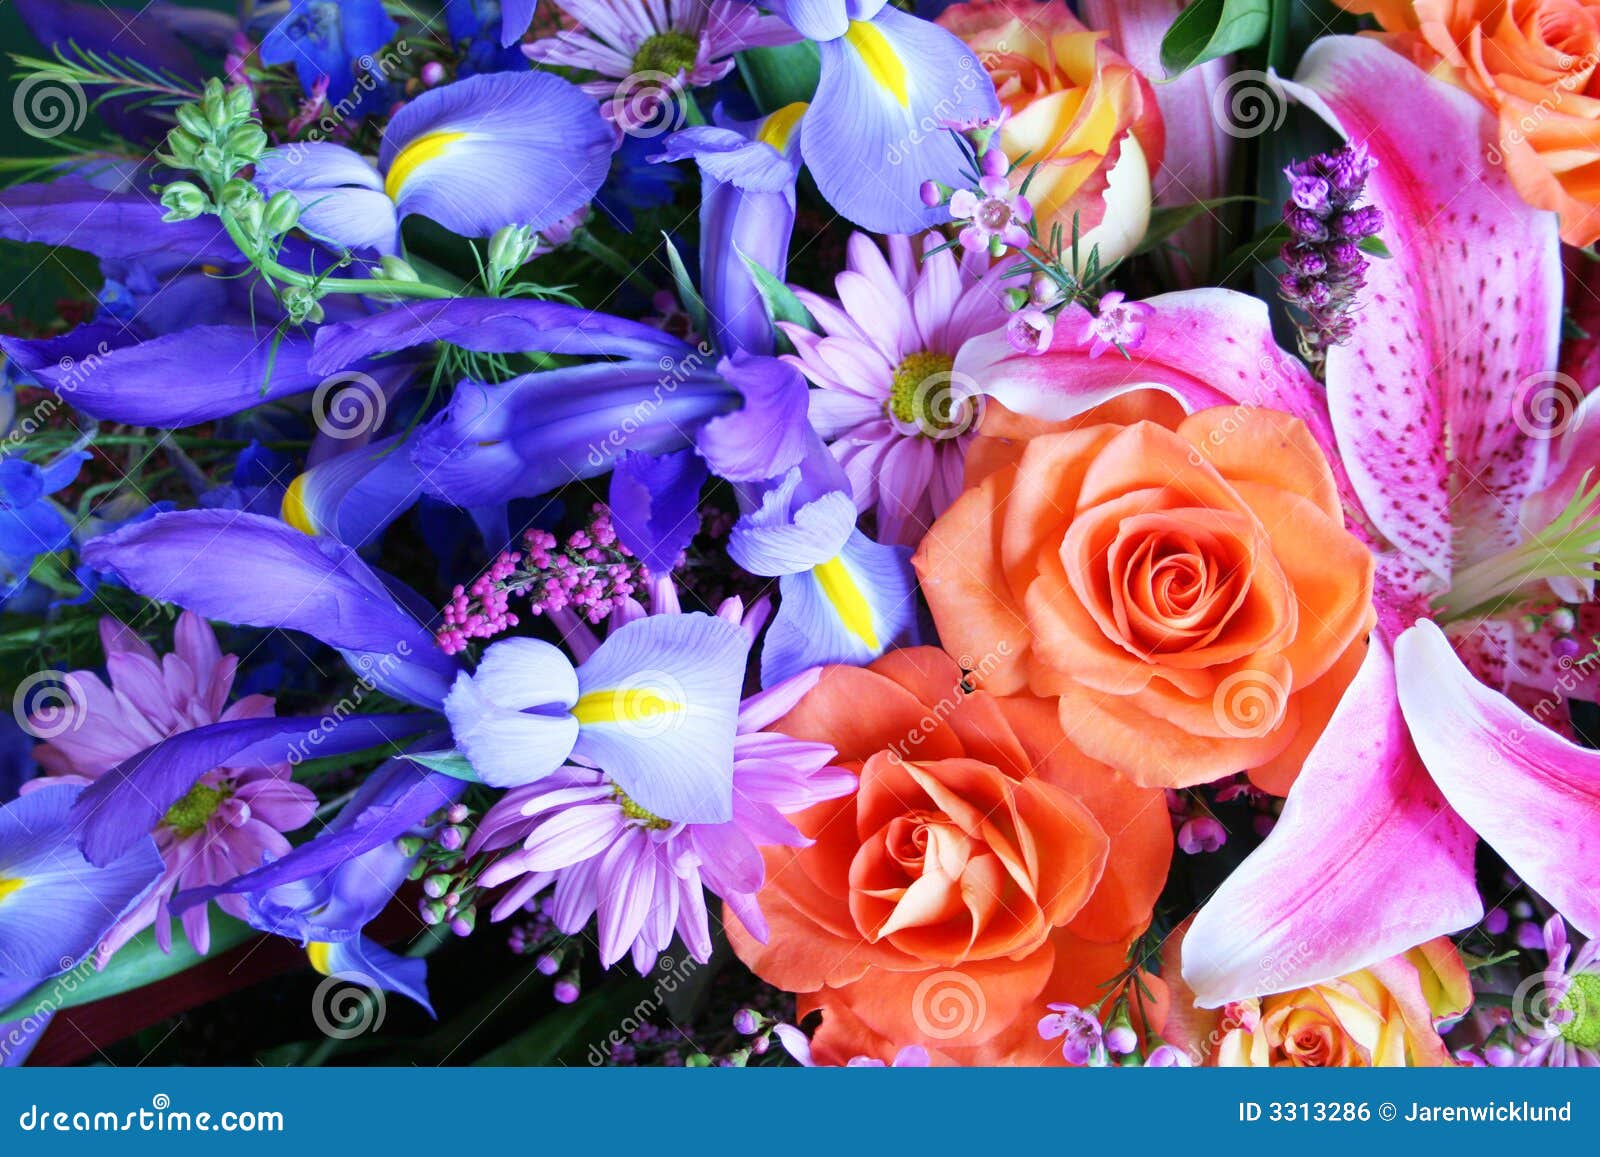 vibrant-bouquet-flowers-3313286.jpg